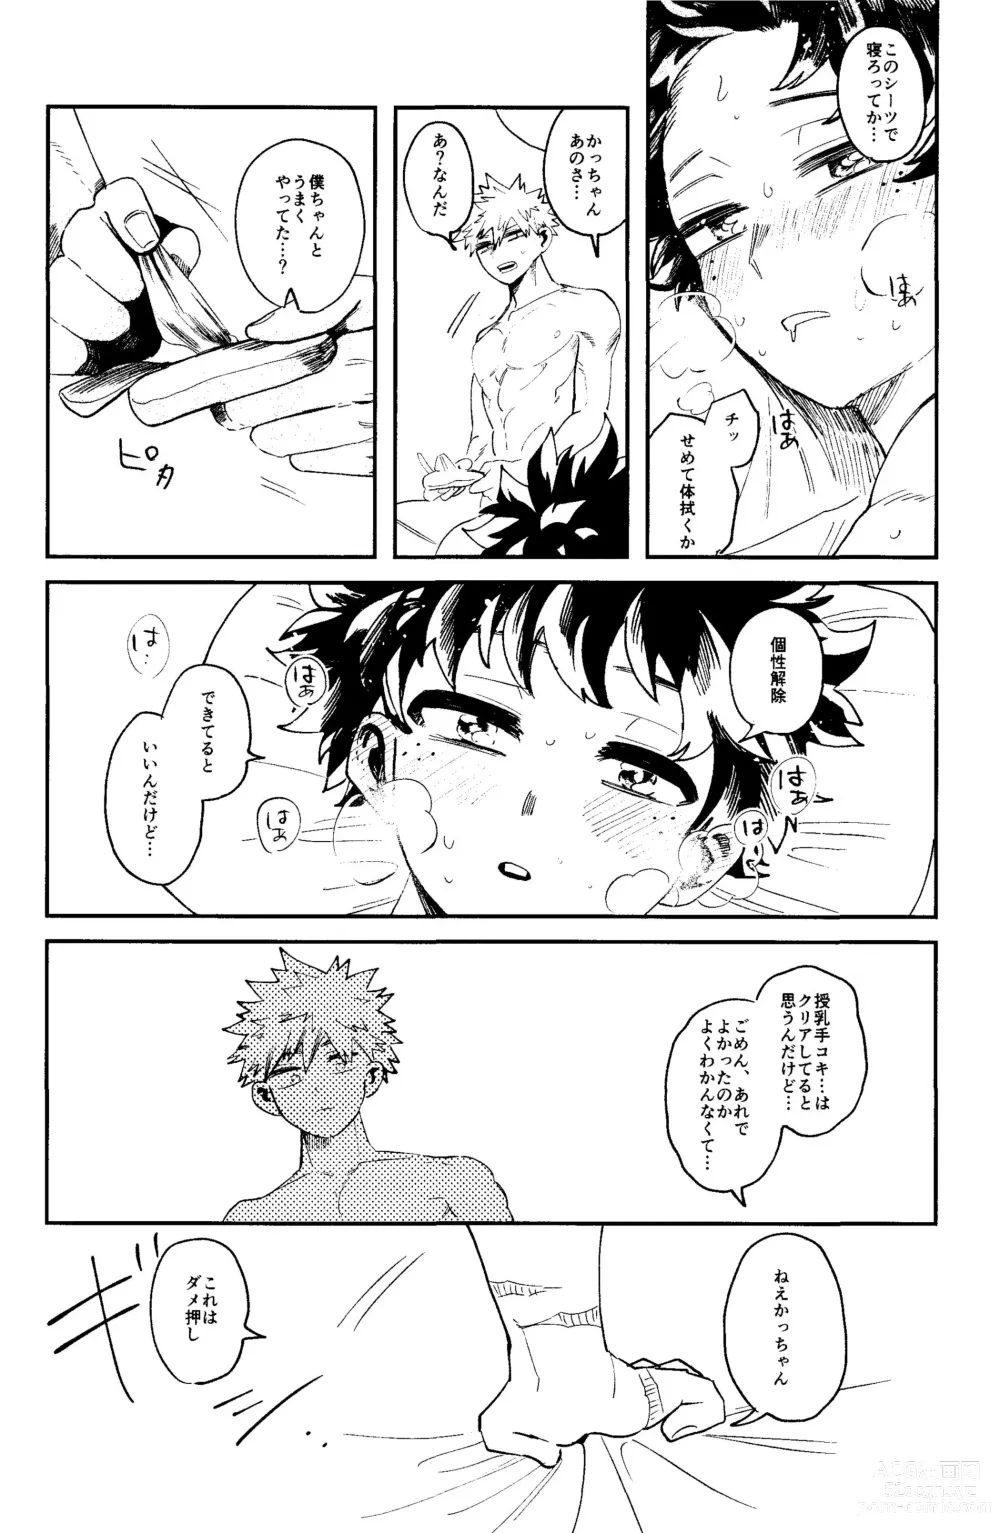 Page 49 of doujinshi HERO taru mono